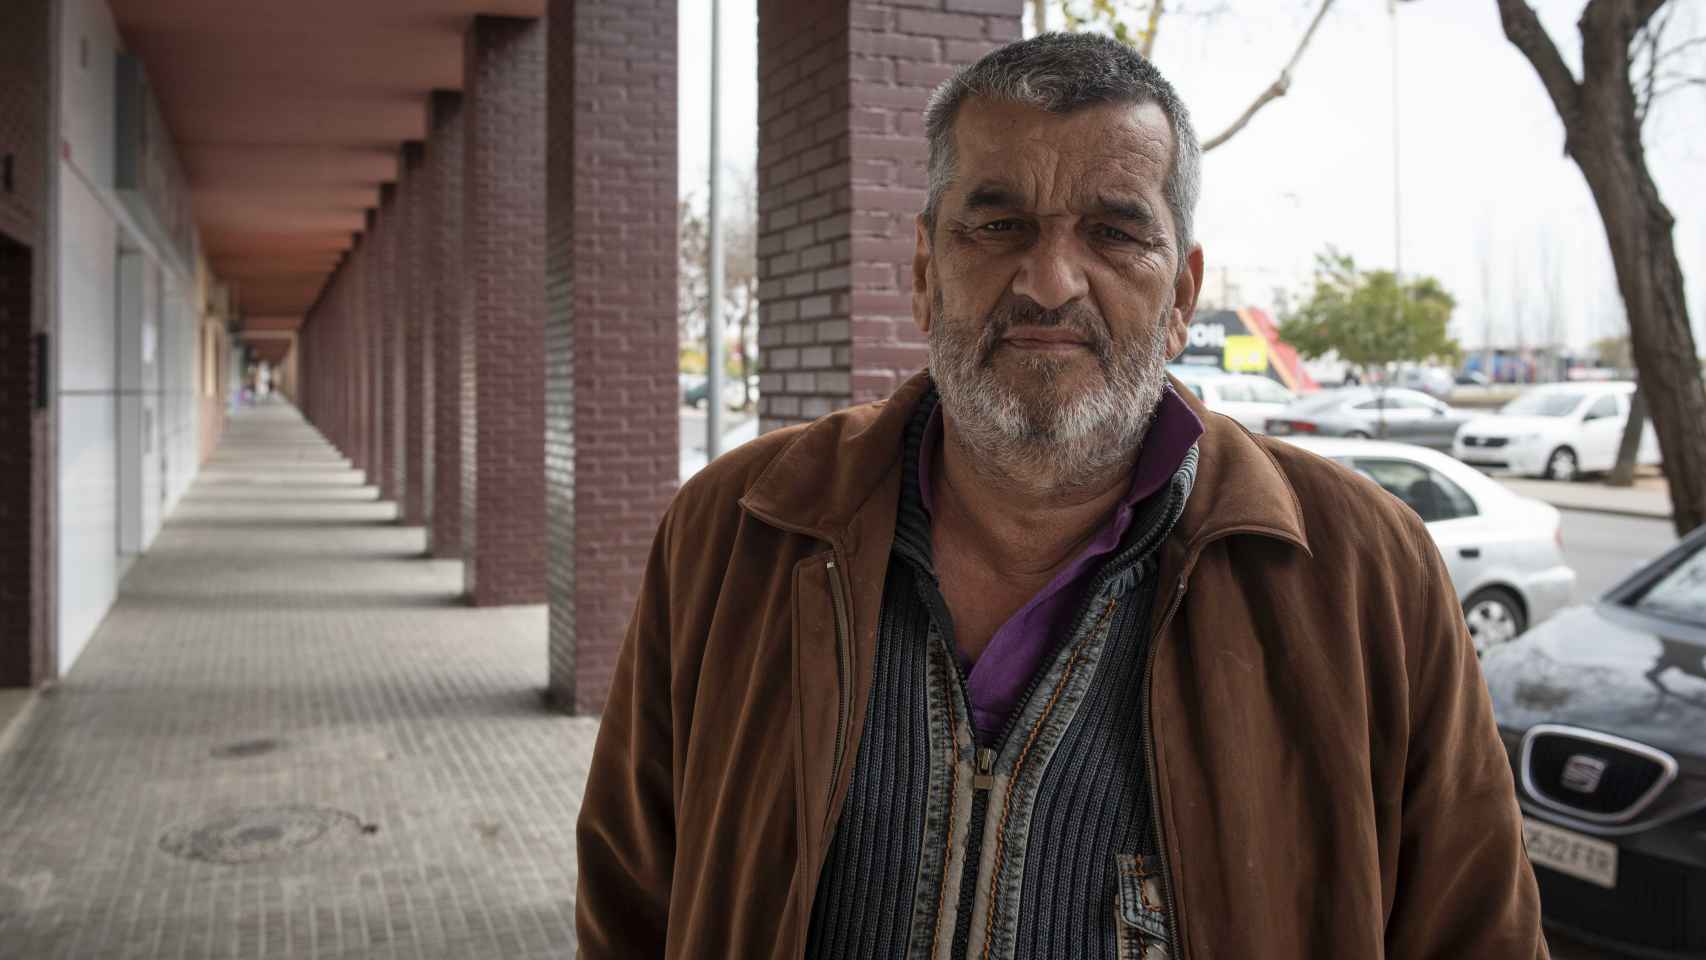 Eugenio Rosa, activista vecinal de 63 años, llegó a Las Palmeras junto a su familia cuando era un niño. Asegura que los vecinos de la barriada sufren un estigma social por vivir allí.